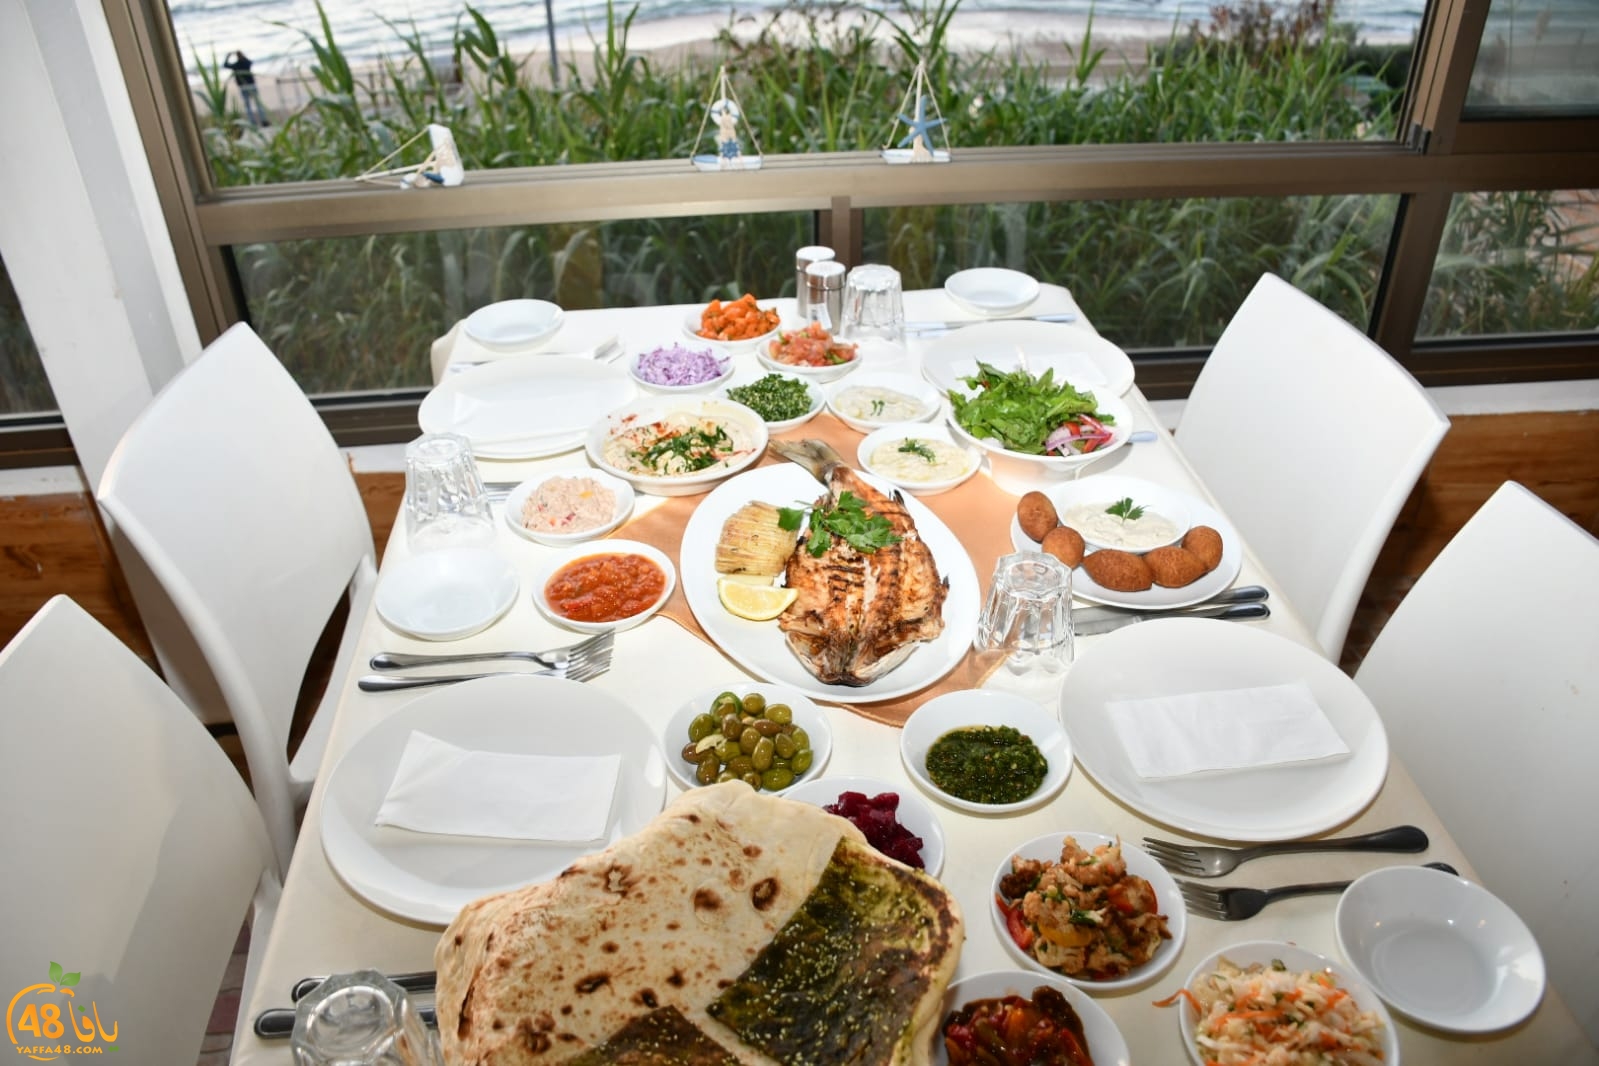  وأخيراً: افتتاح مطعم عروس البحر باباي الأقرب لشاطئ بحر يافا 